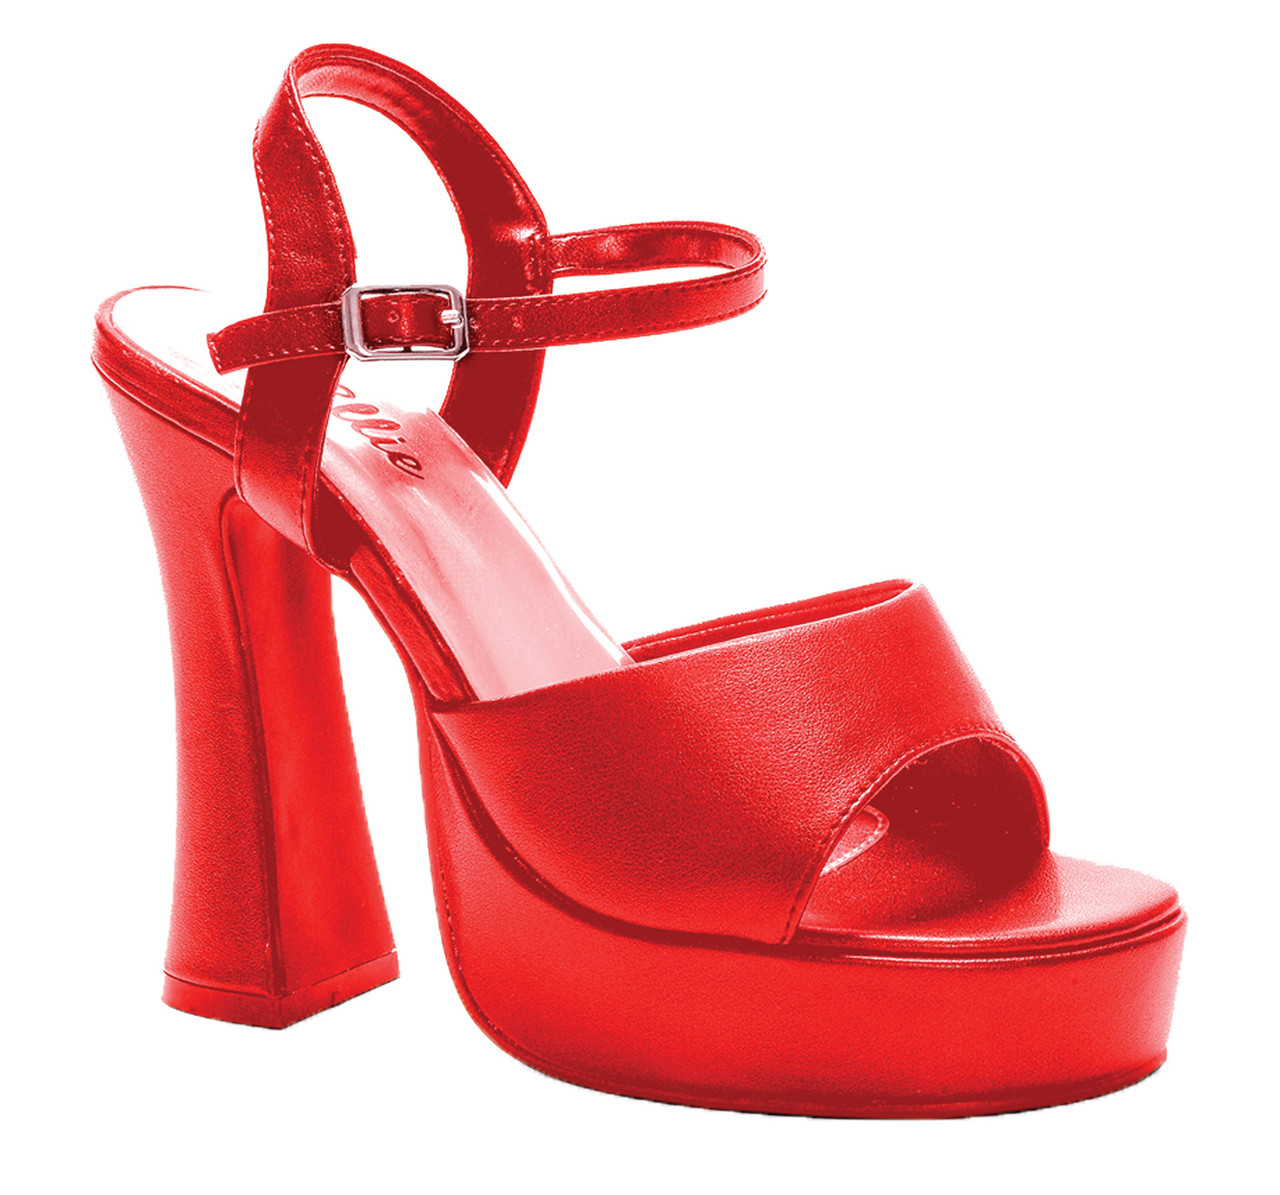 Plot Twist Heel - Black | Black heels, Heels, Red sandals heels